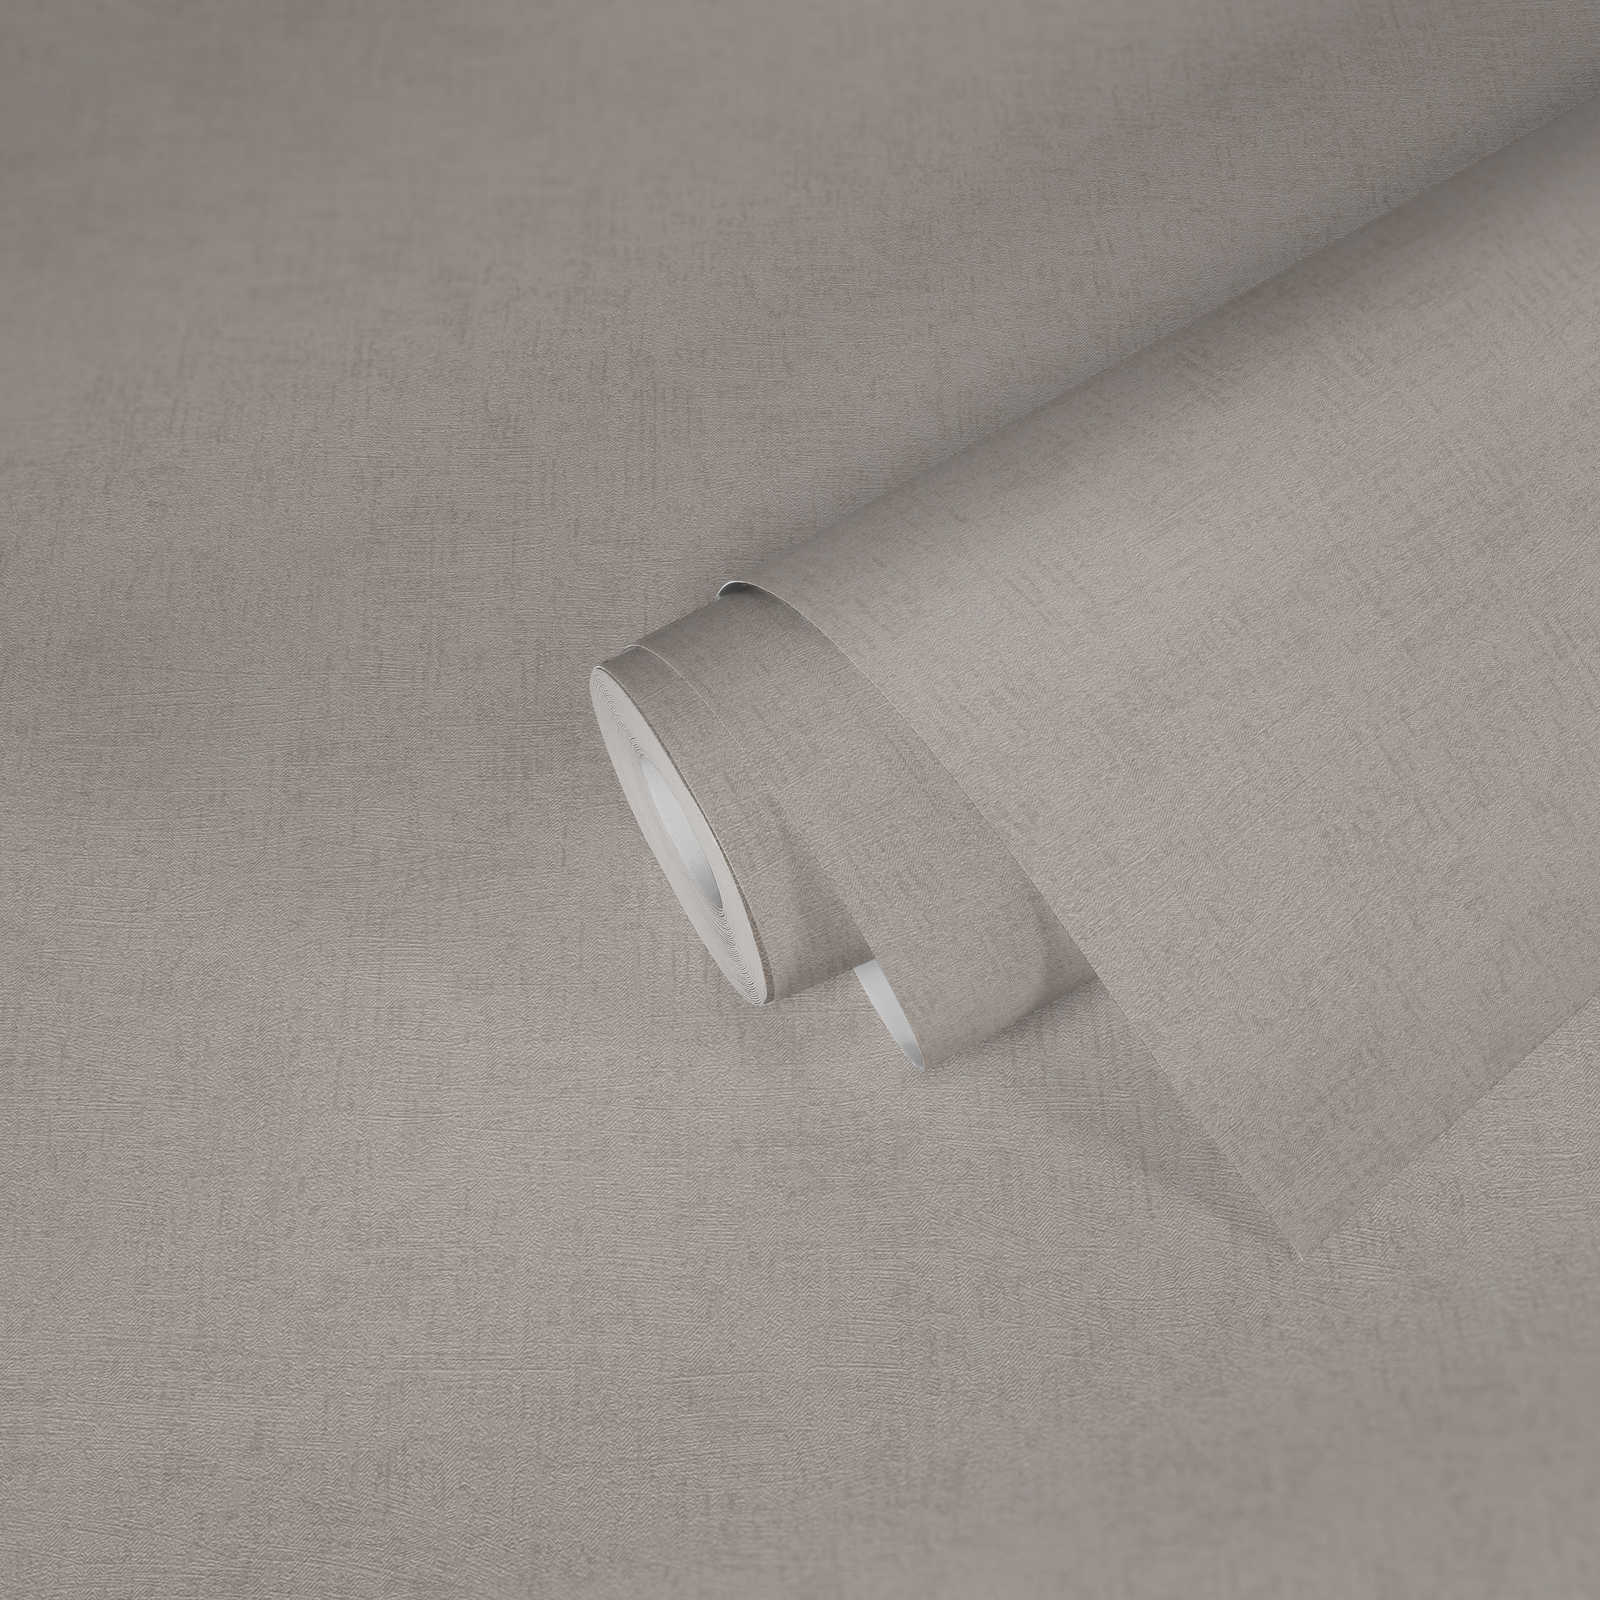             Blanc nacré papier peint à effet métallisé, uni & structuré - beige, crème, métallisé
        